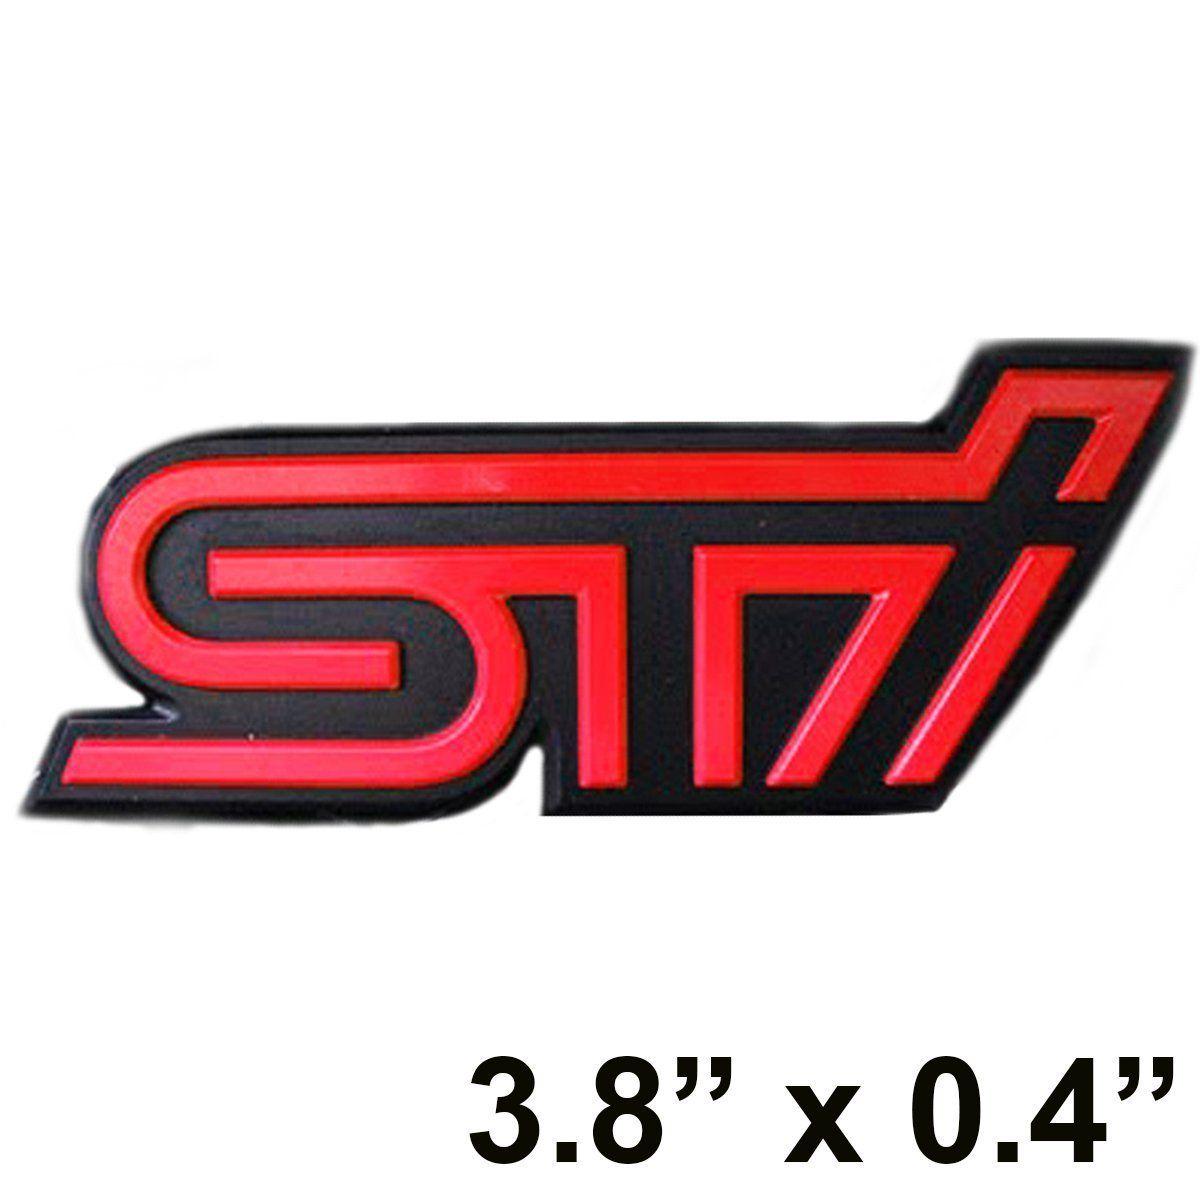 Impreza WRX STI Logo - JDM Red STi Logo Emblem Badge Sticker For Subaru WRX Sti Impreza GDB ...